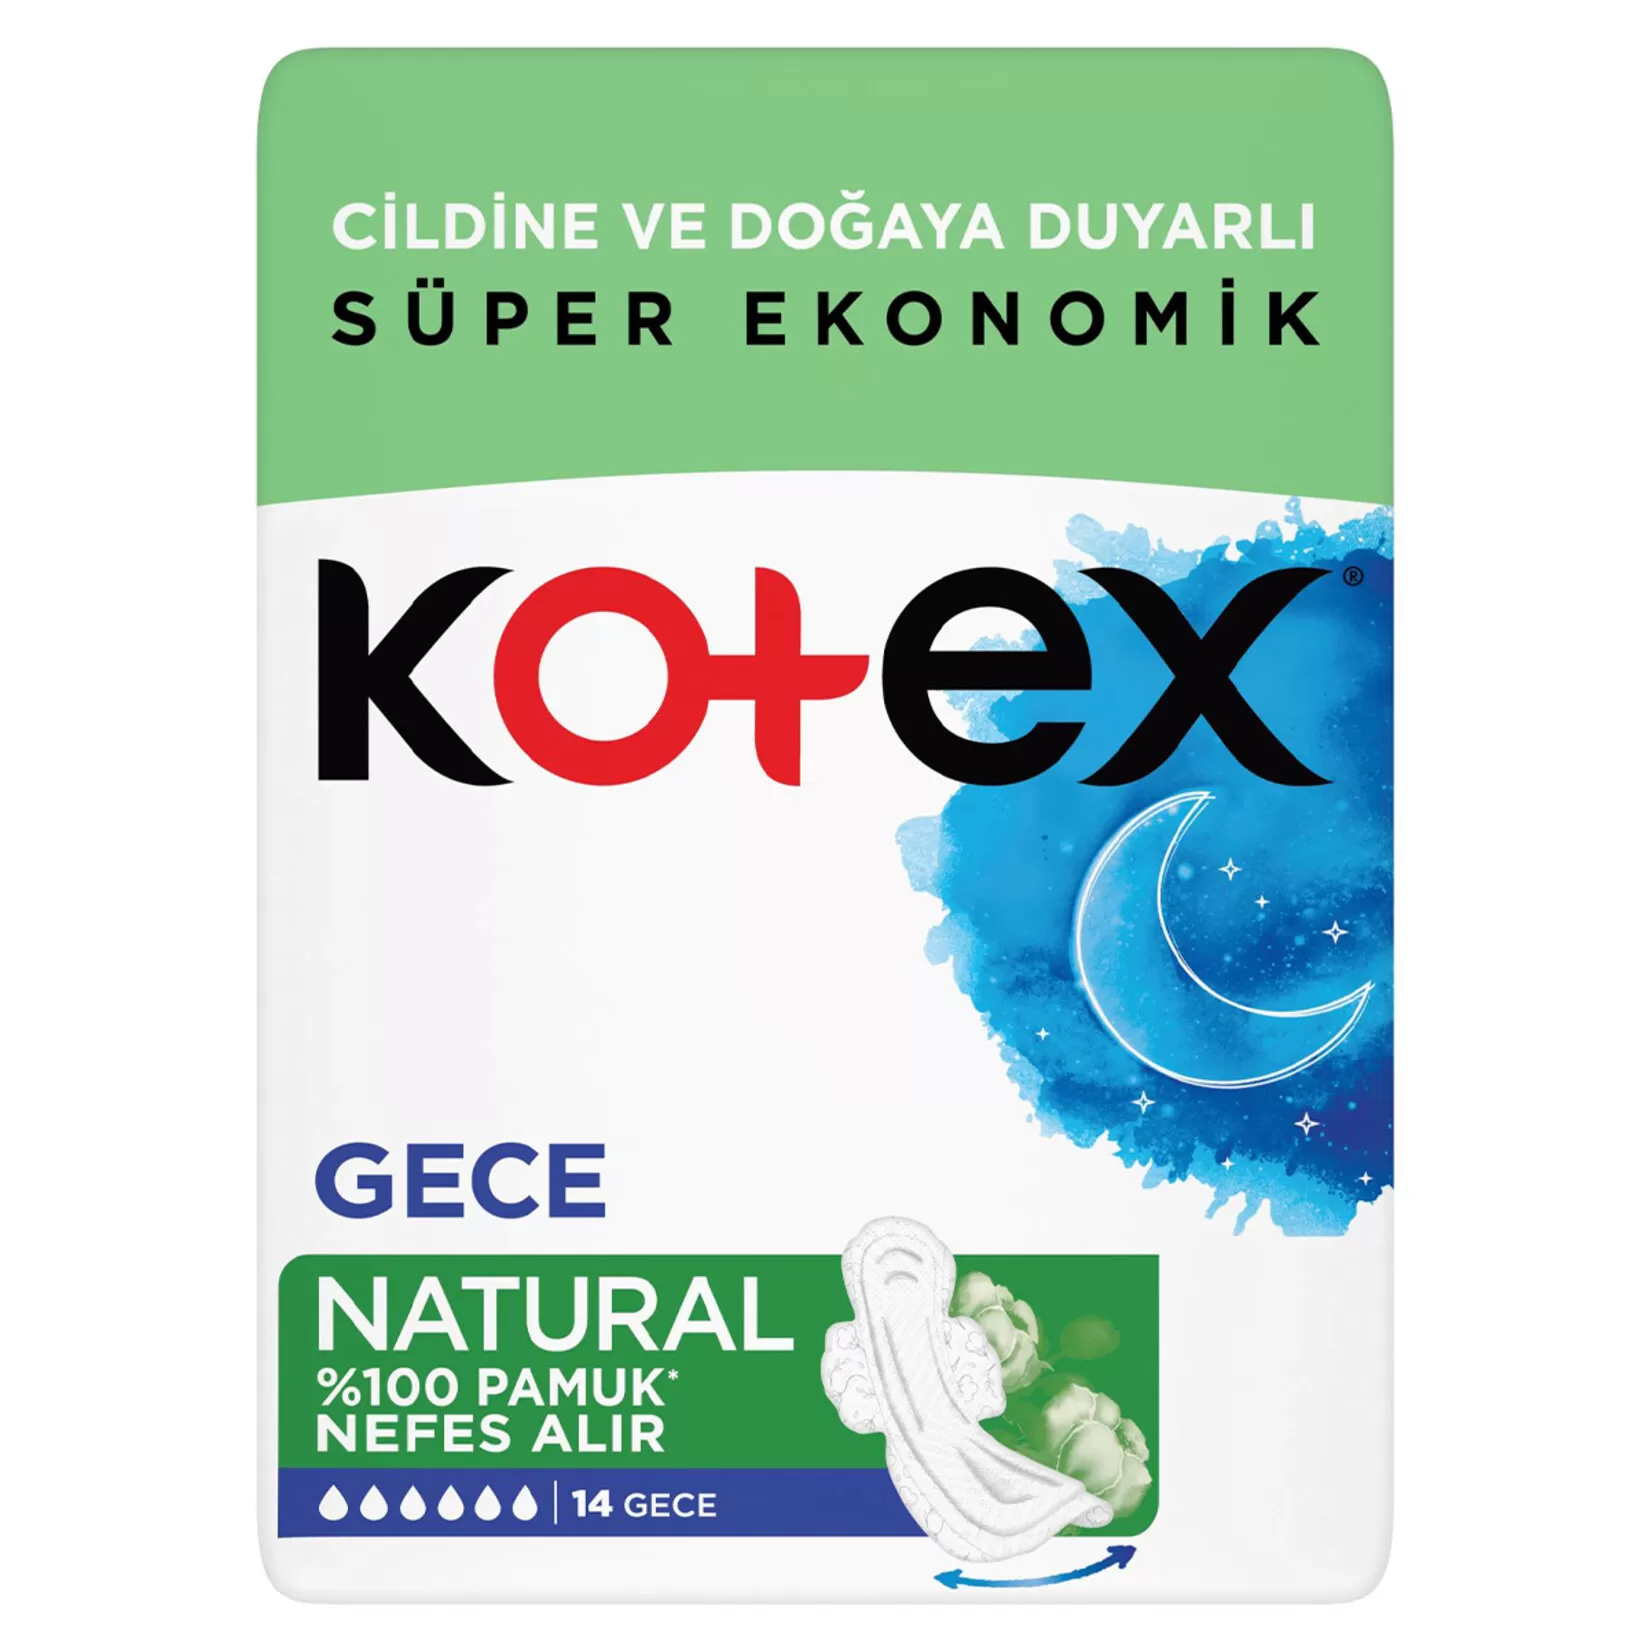 Kotex Natural Ped Gece 14x4 56 Adet